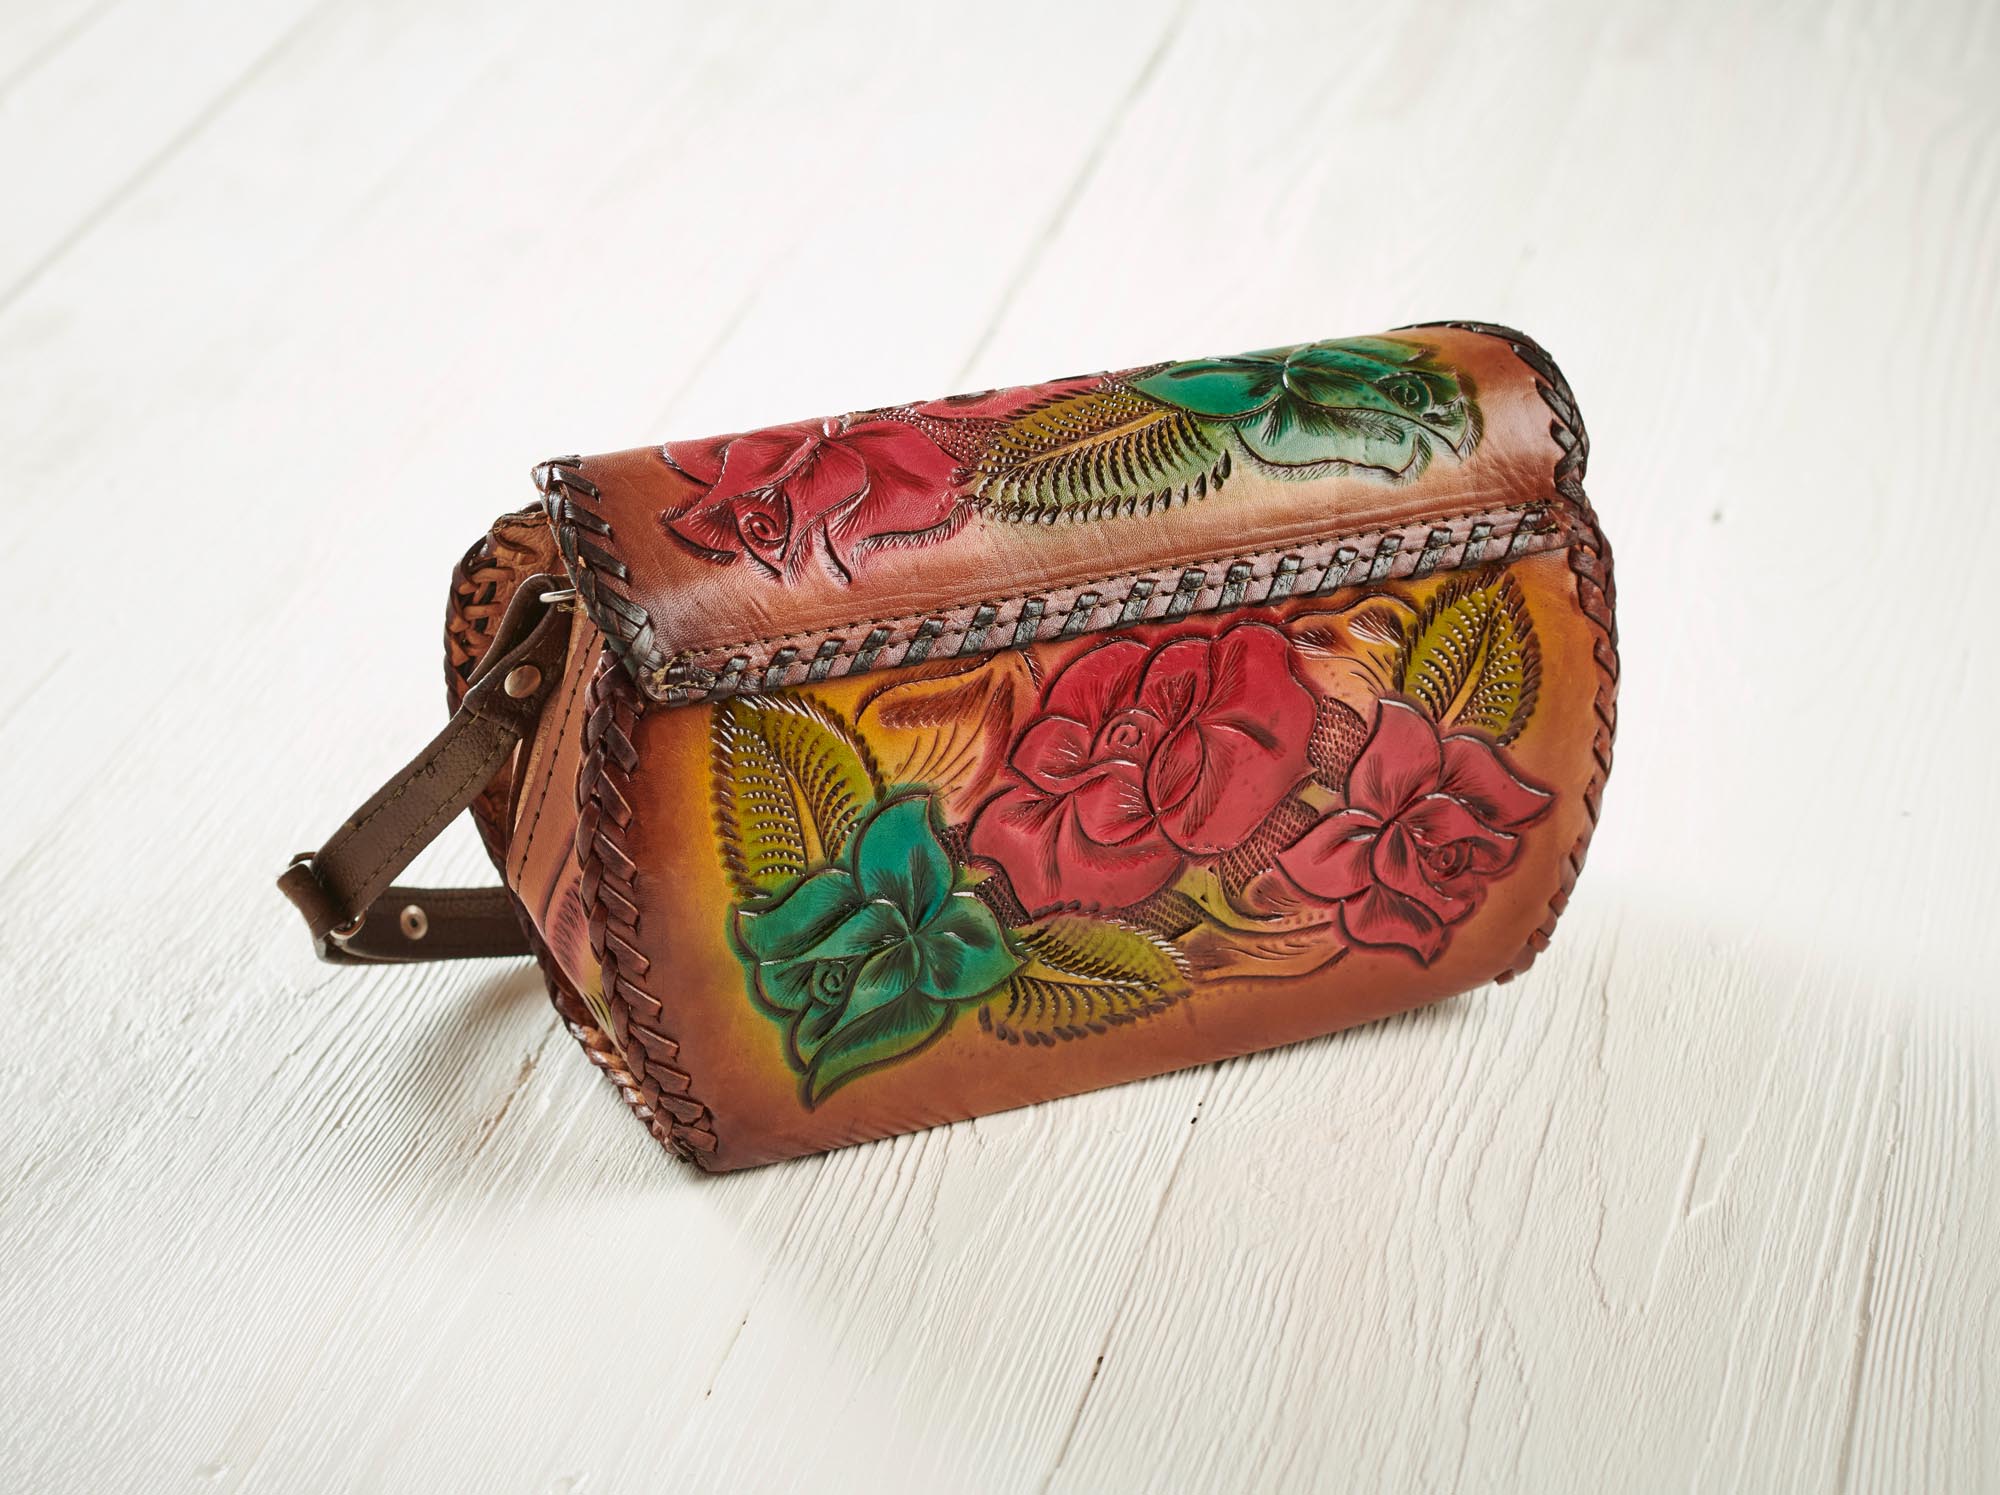 Leather Flower Bucket Handbags | Damenhandtaschen, Lederhandtaschen,  Ungewöhnliche taschen